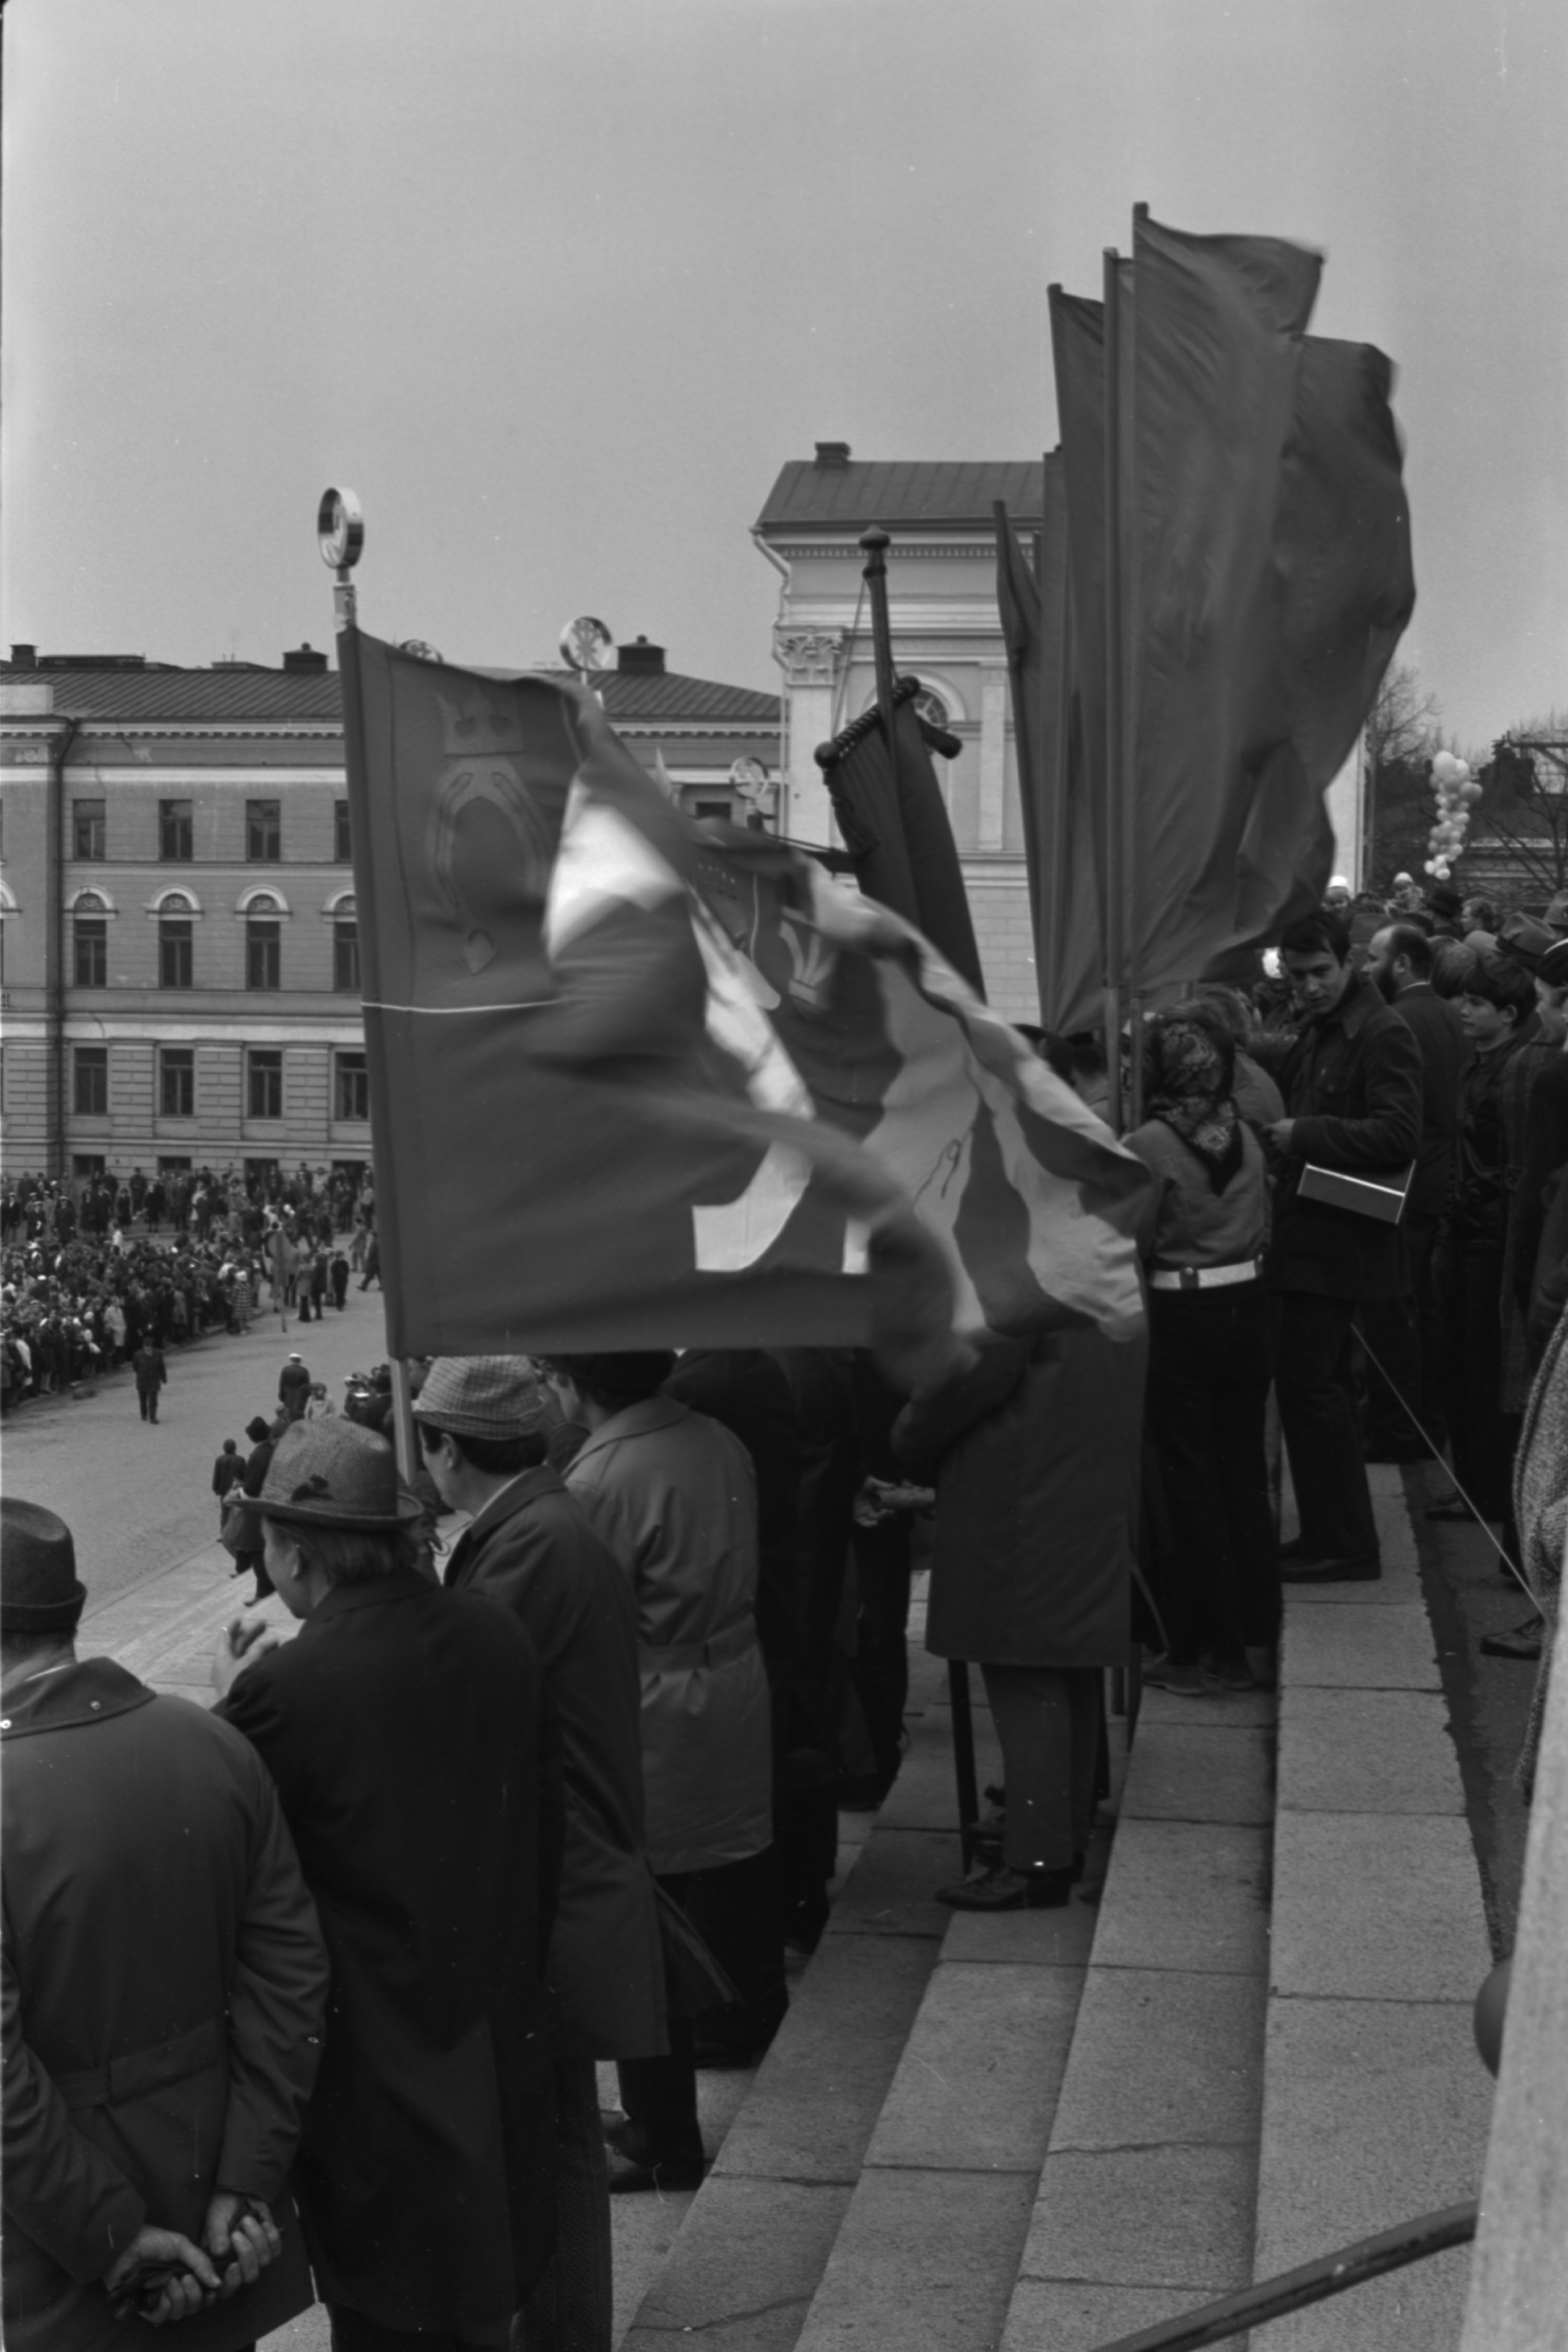 Hallituskatu 7. Ihmisiä punalippuineen seisomassa Tuomiokirkon portailla työväen vappujuhlassa 1.5.1972.